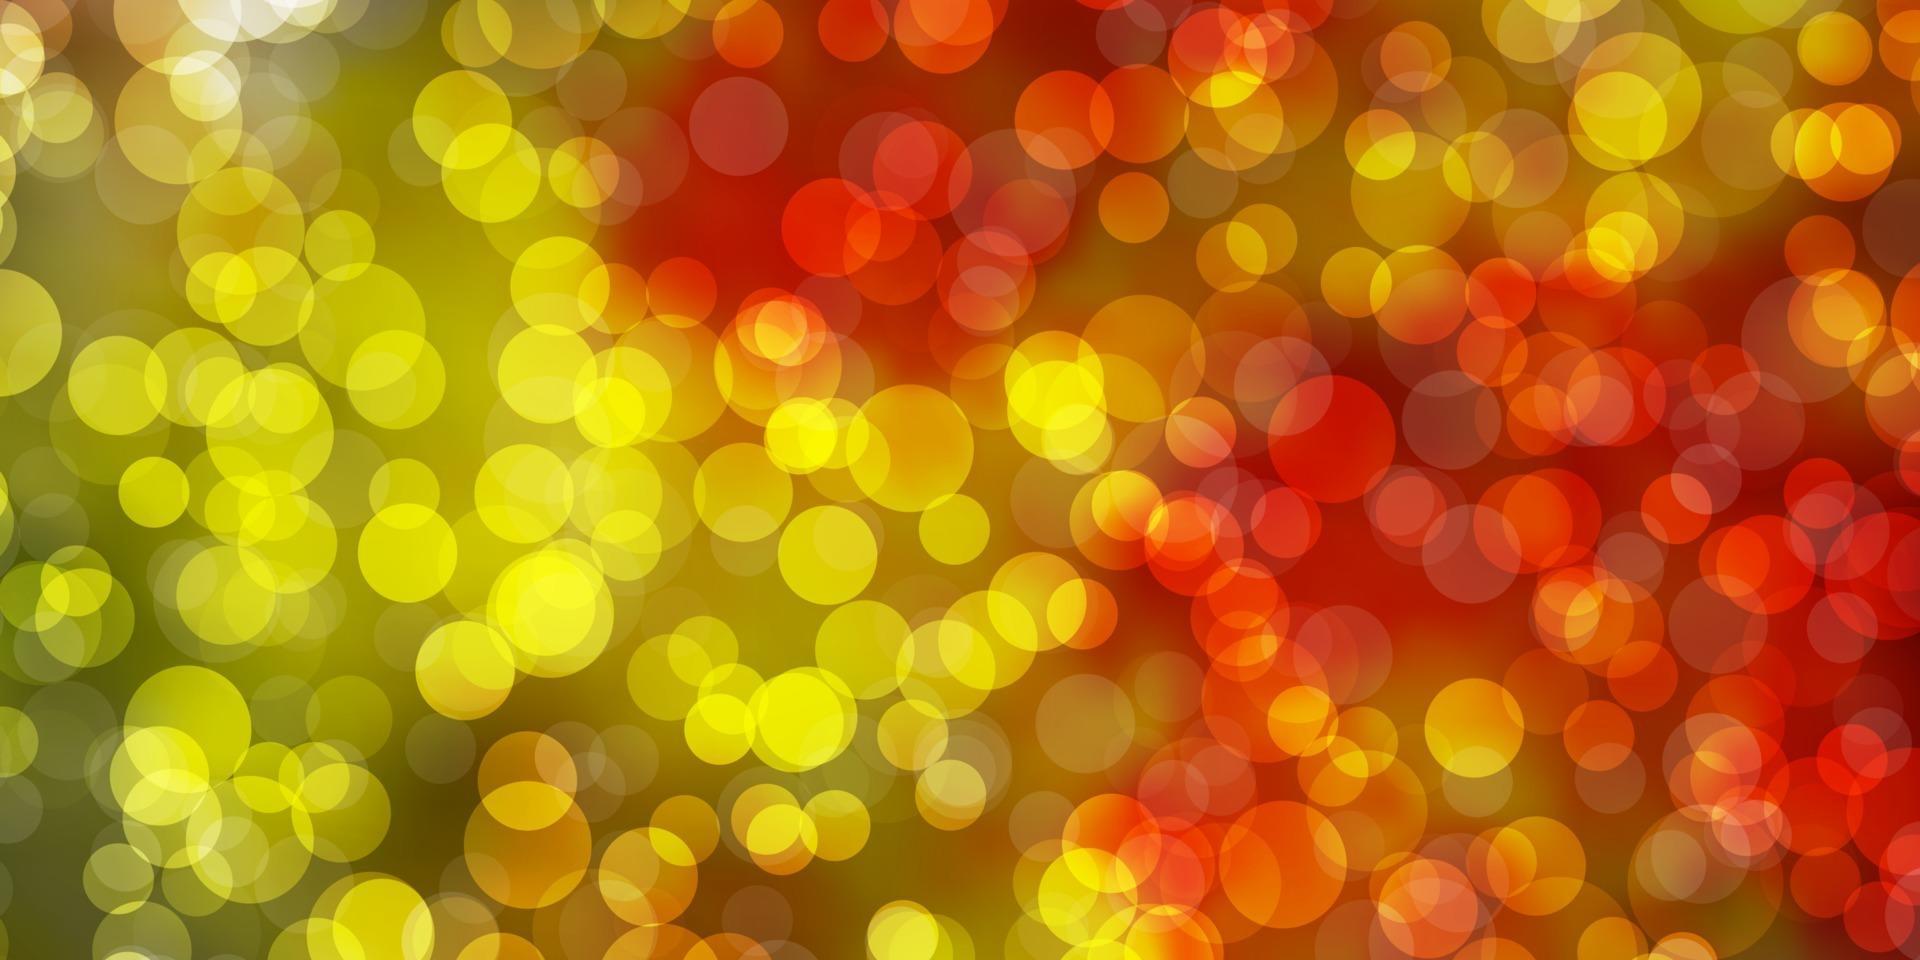 ljusrosa, gul vektorbakgrund med prickar. vektor